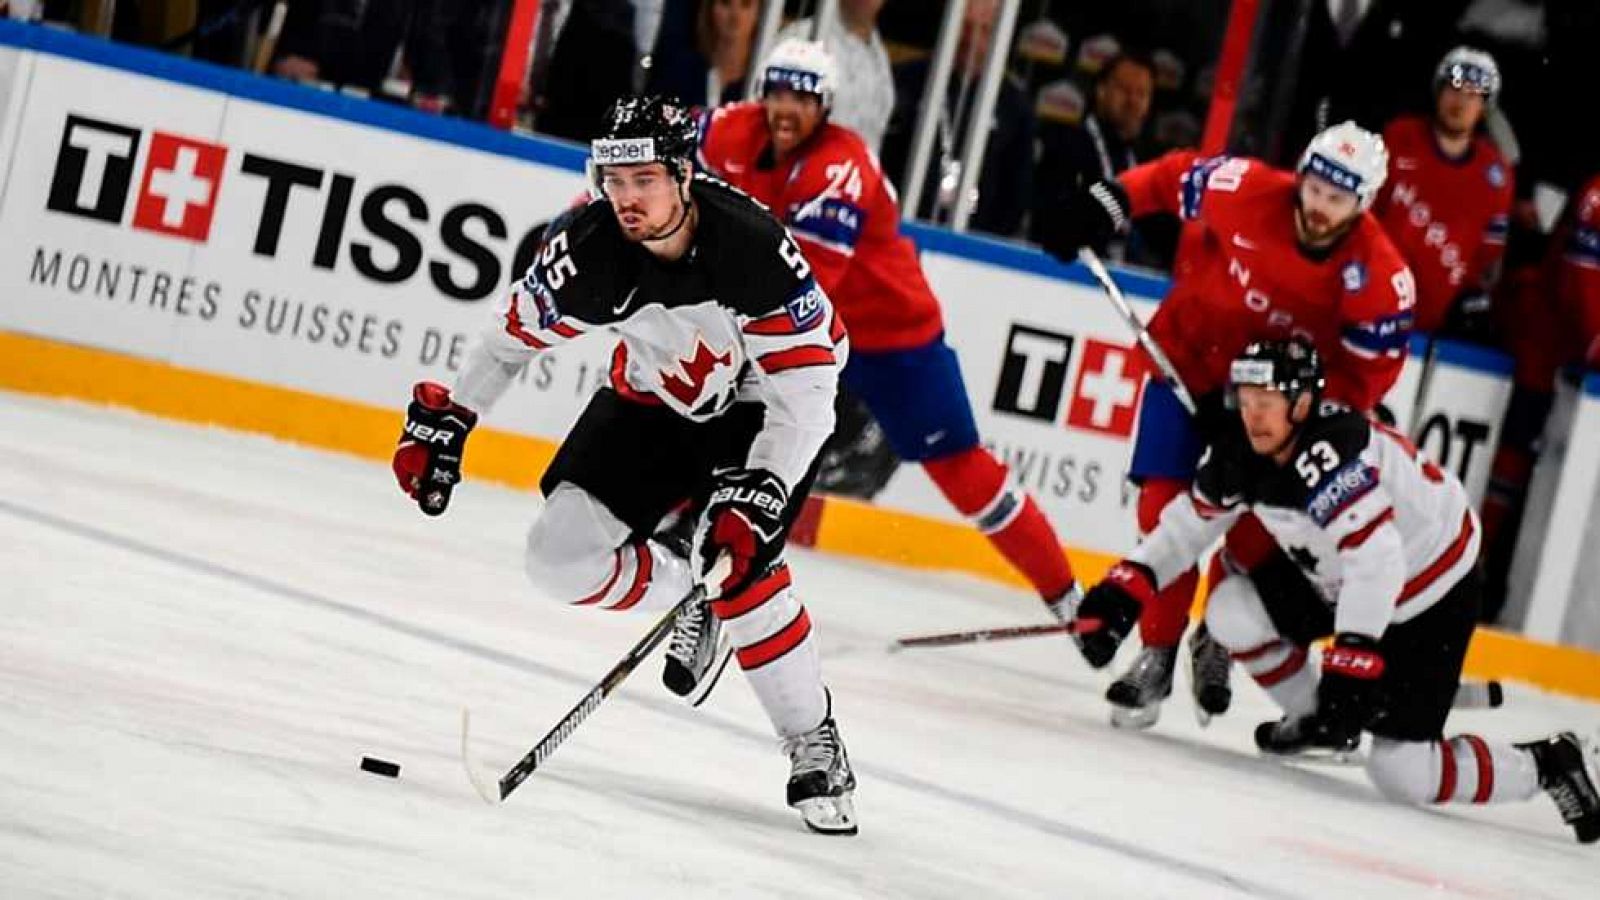 Hockey Hielo - Campeonato del Mundo Masculino 2017: Canadá - Noruega desde París (Francia)